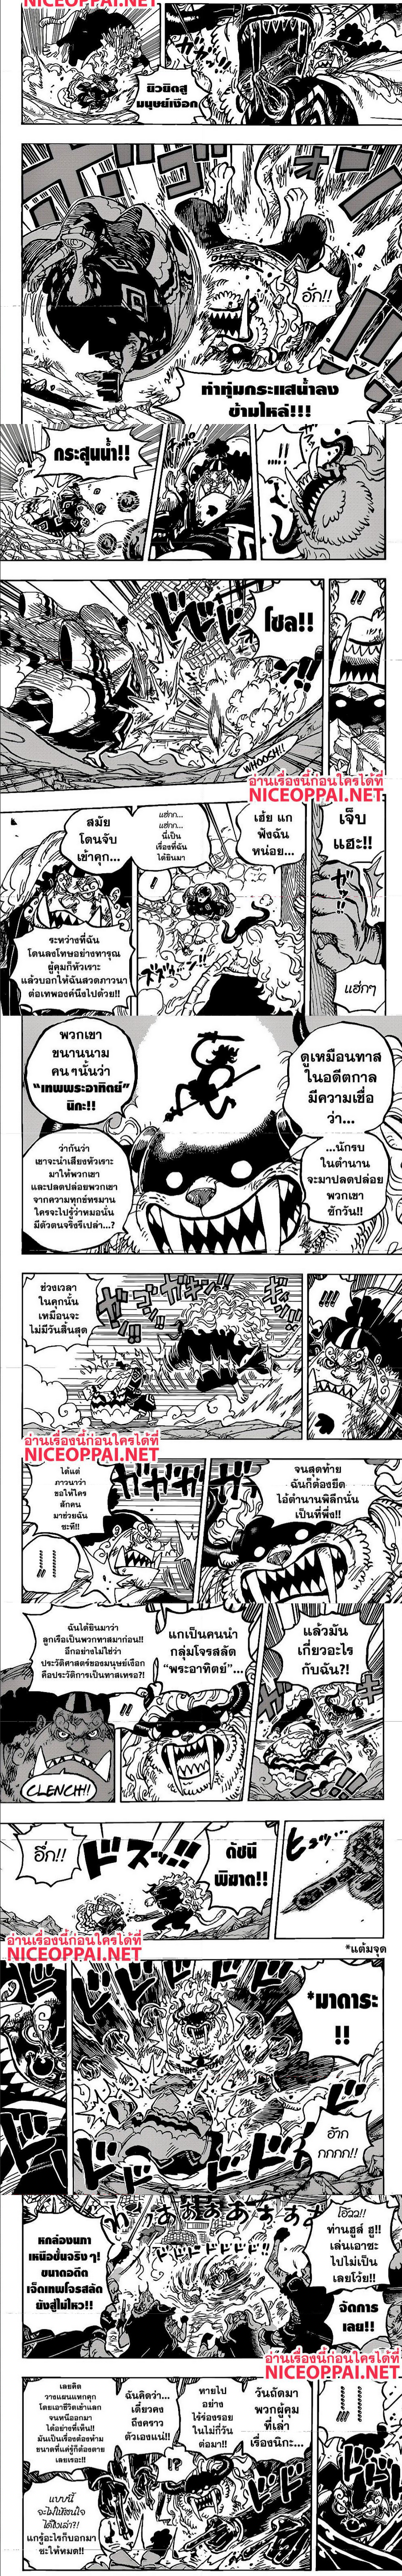 One Piece1018 (3)